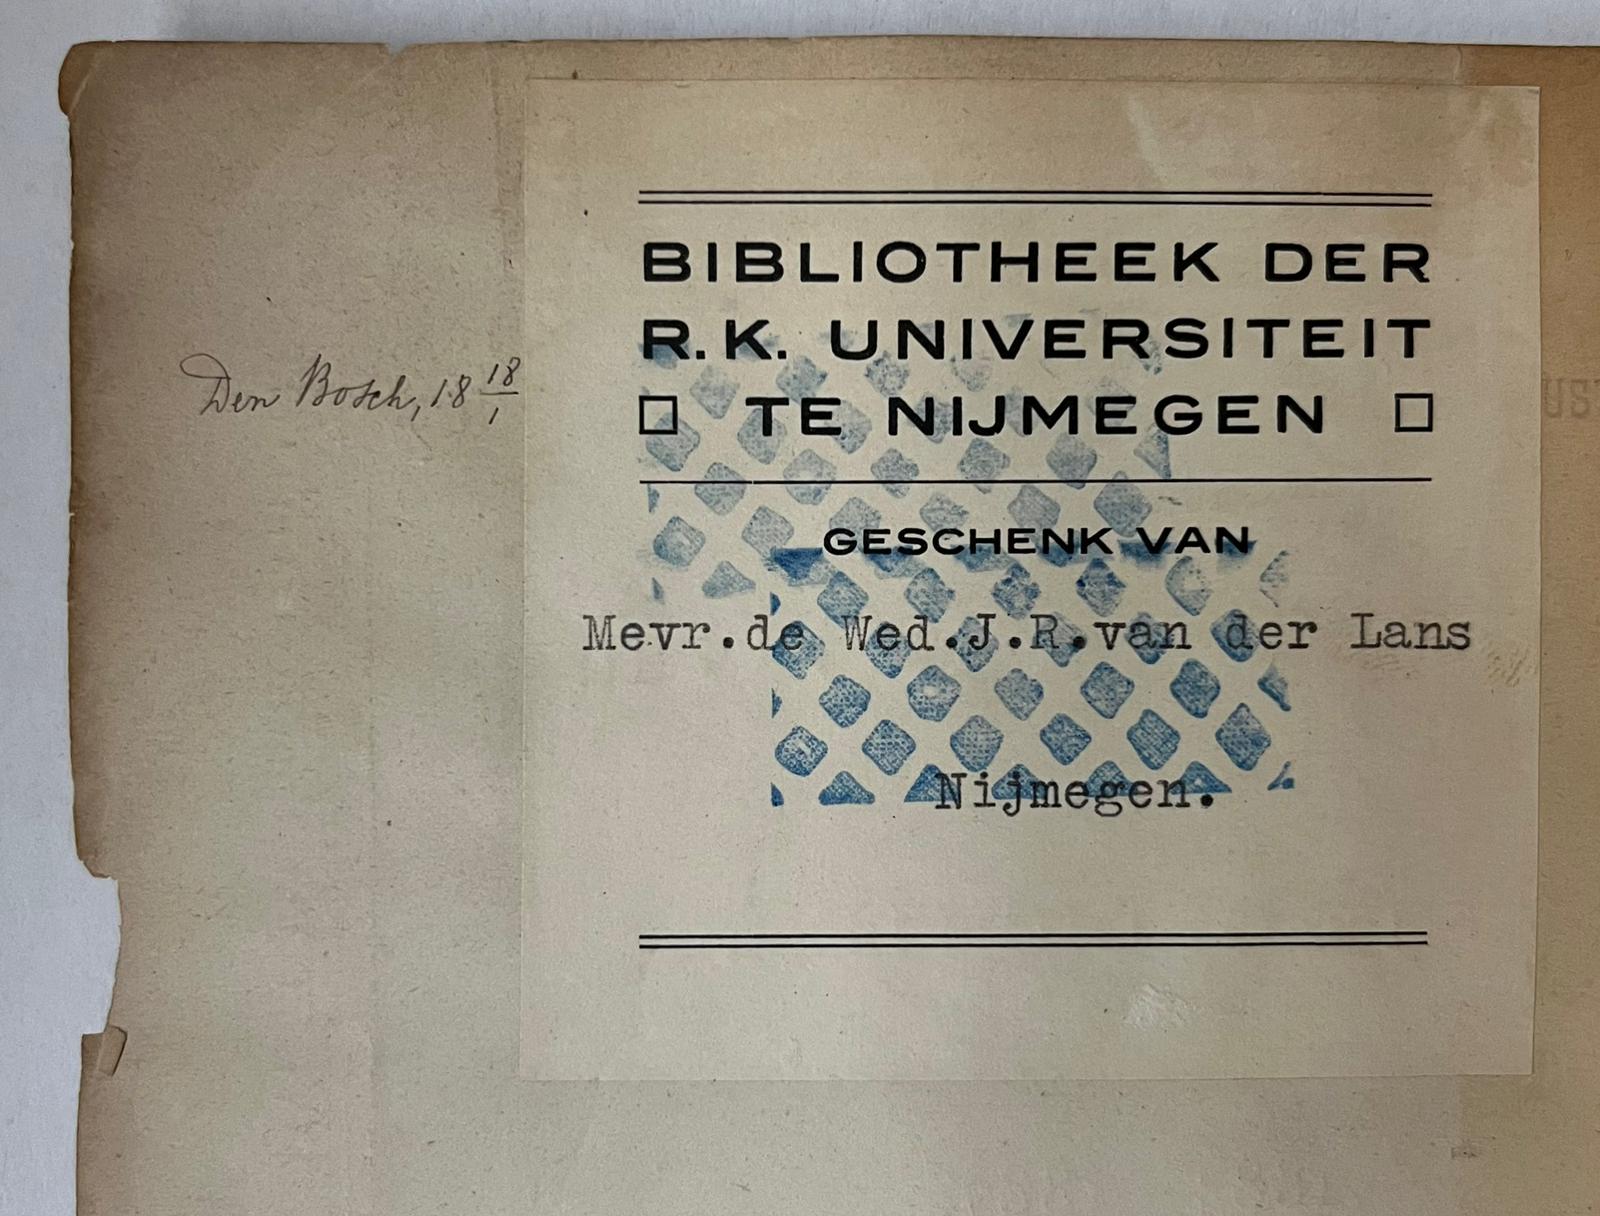 [Literature 1887] Winterloof. Late gedichten 1884-1887. Leiden, A.W. Sijthoff, [1887], 164 pp.